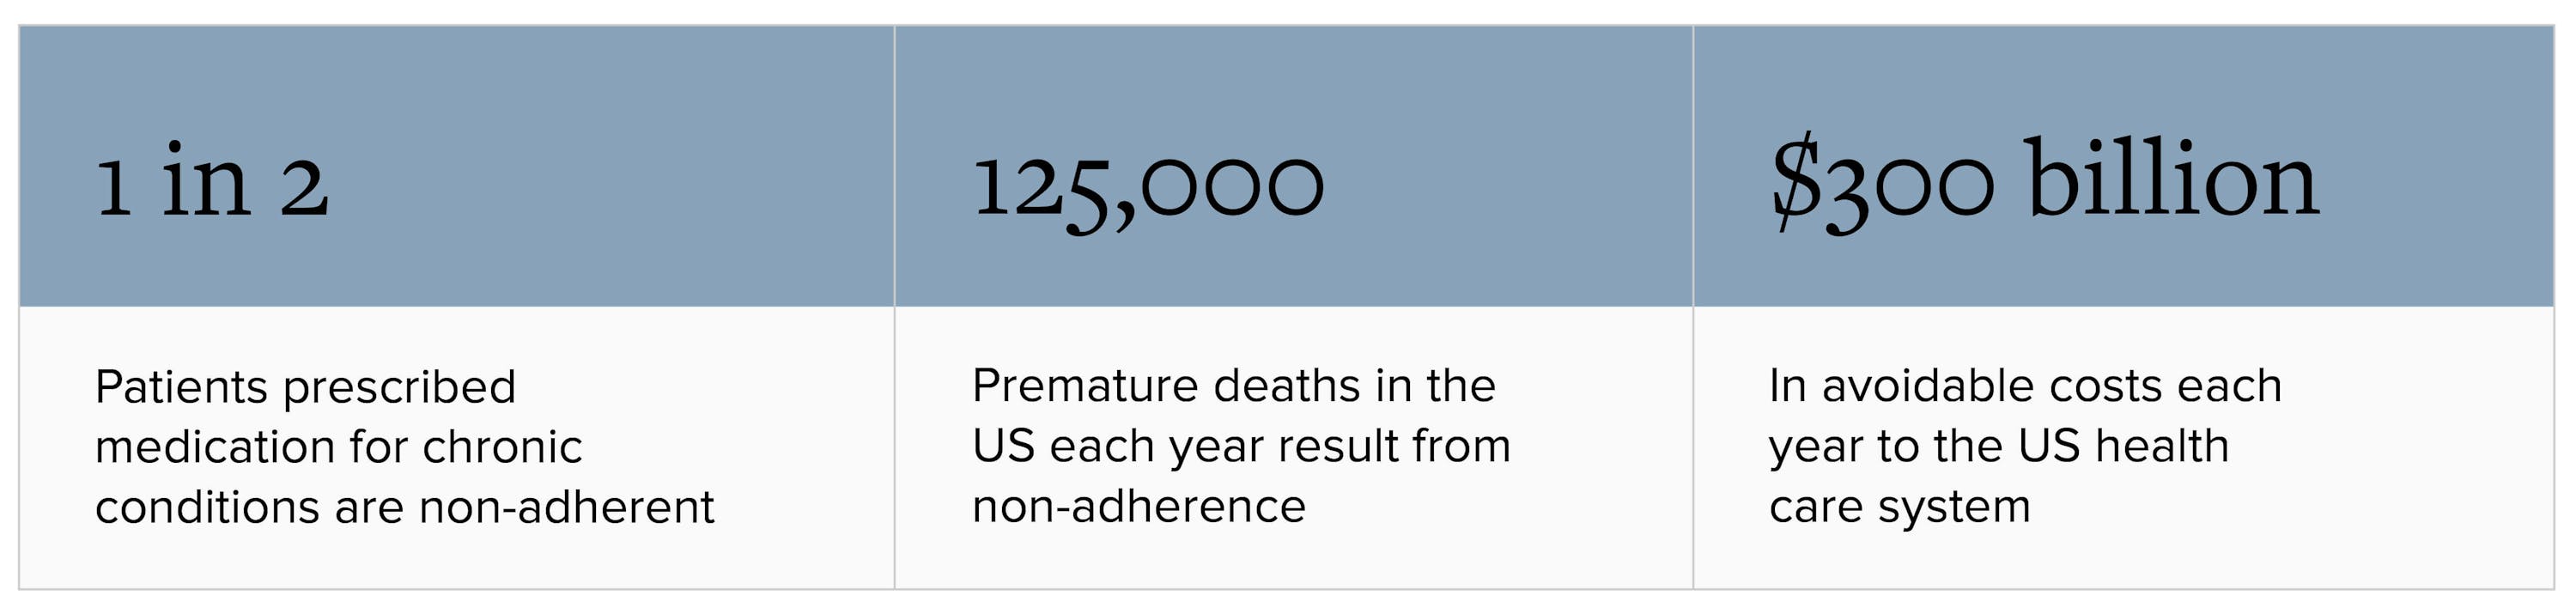 Premature death statistics